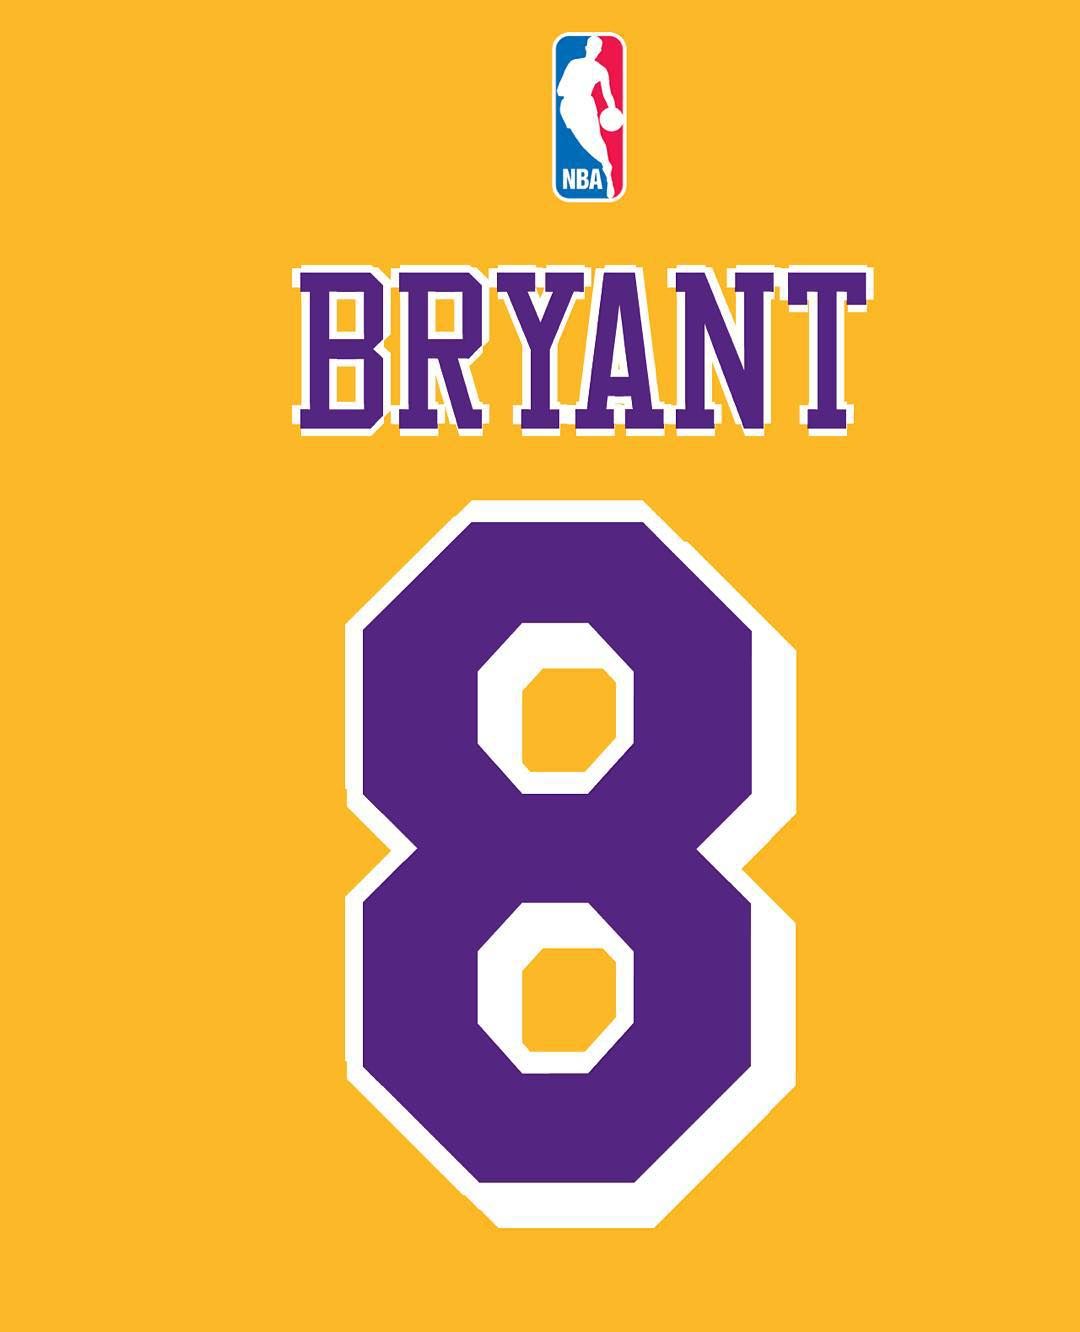 Kobe bryant .com